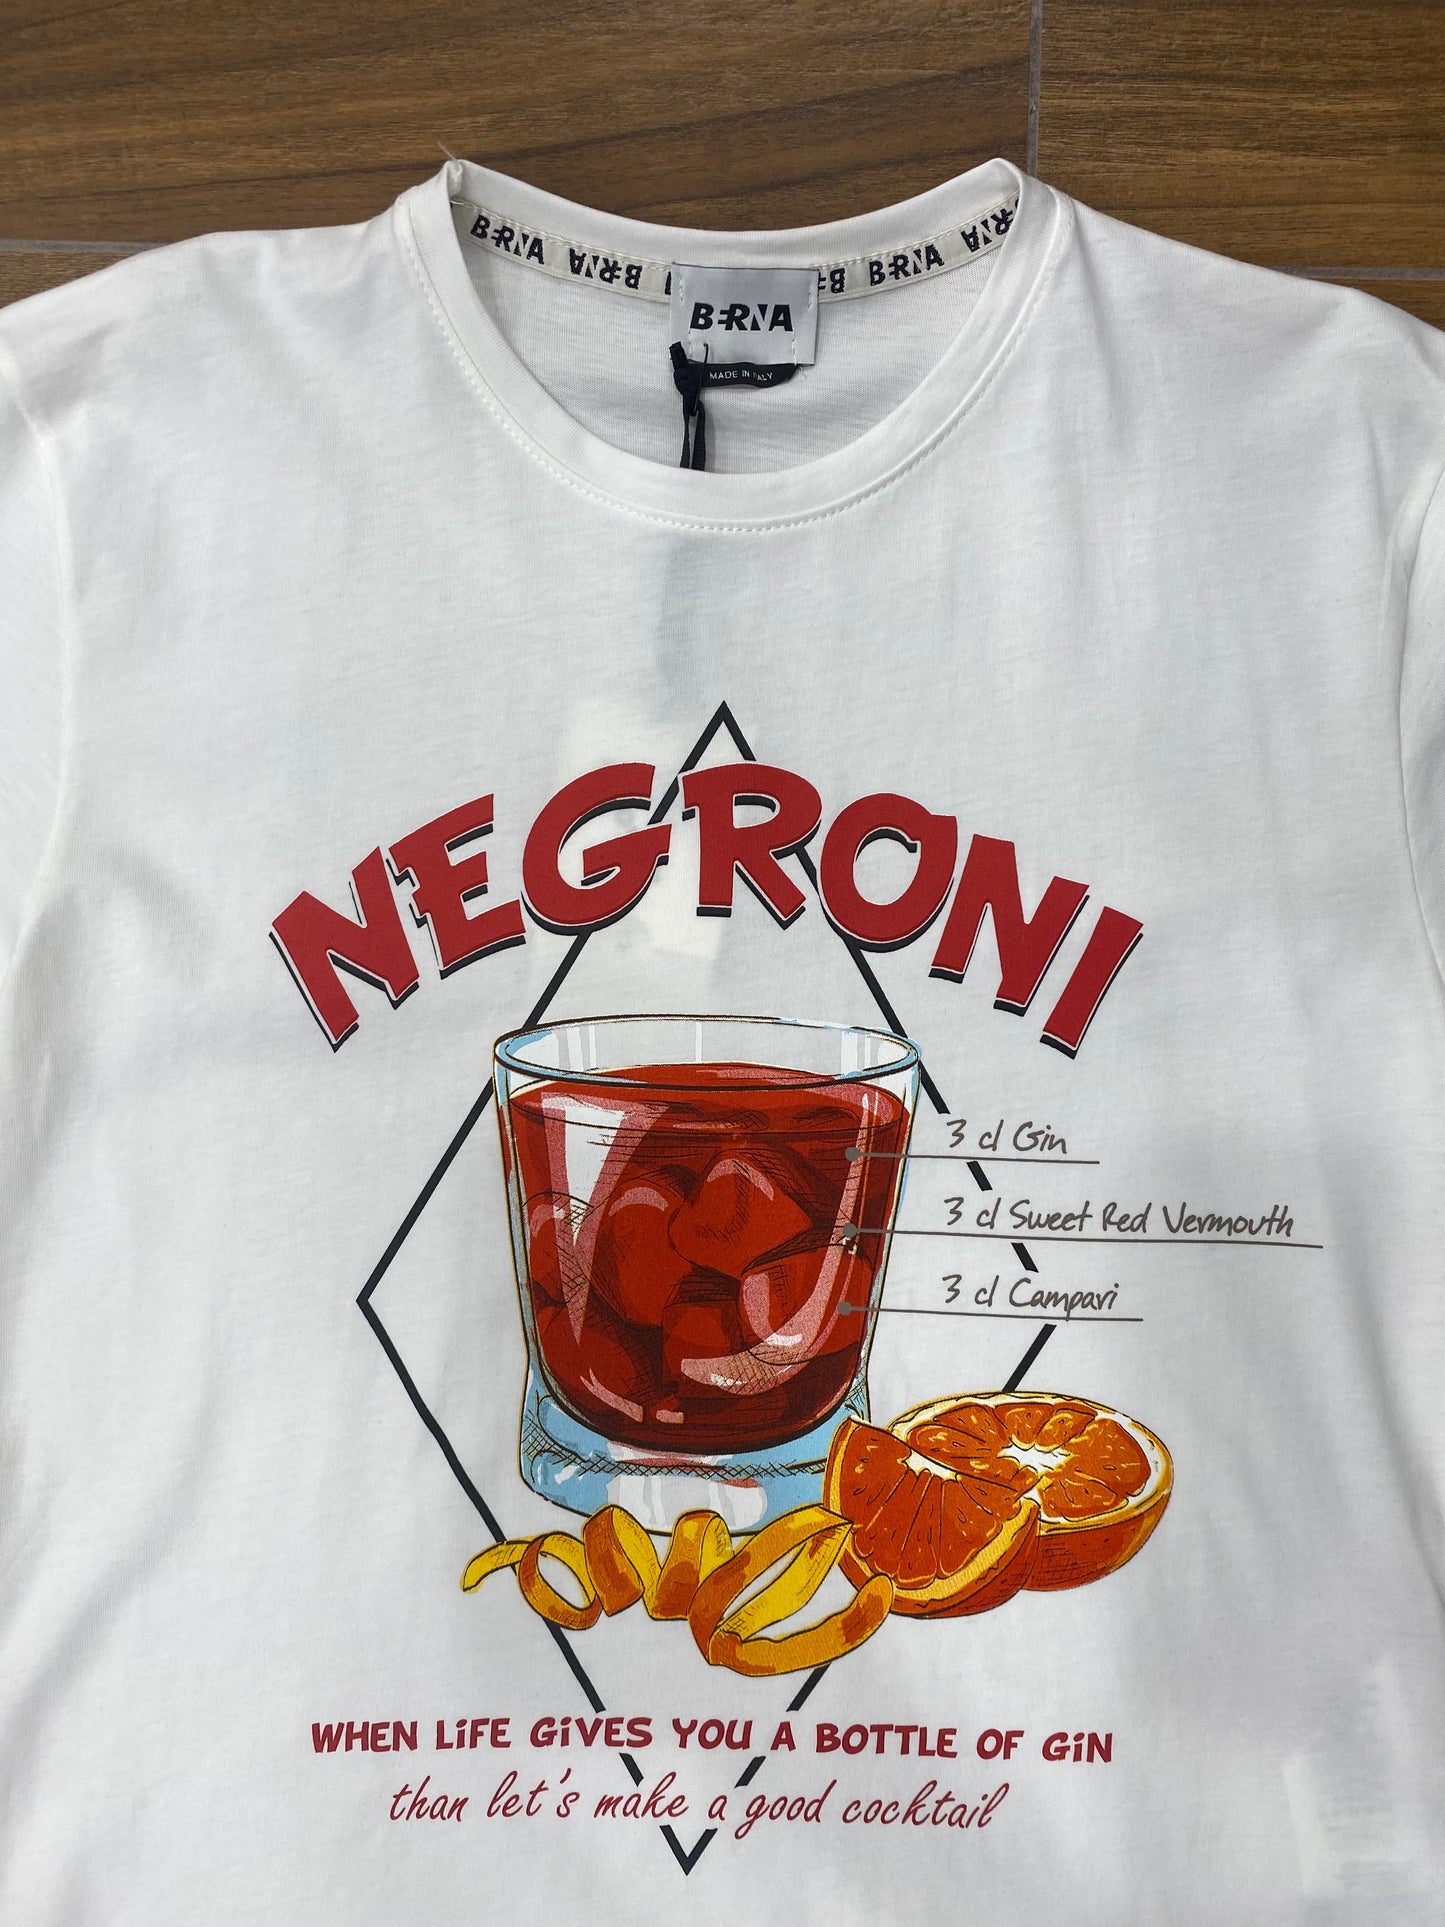 T-shirt Negroni